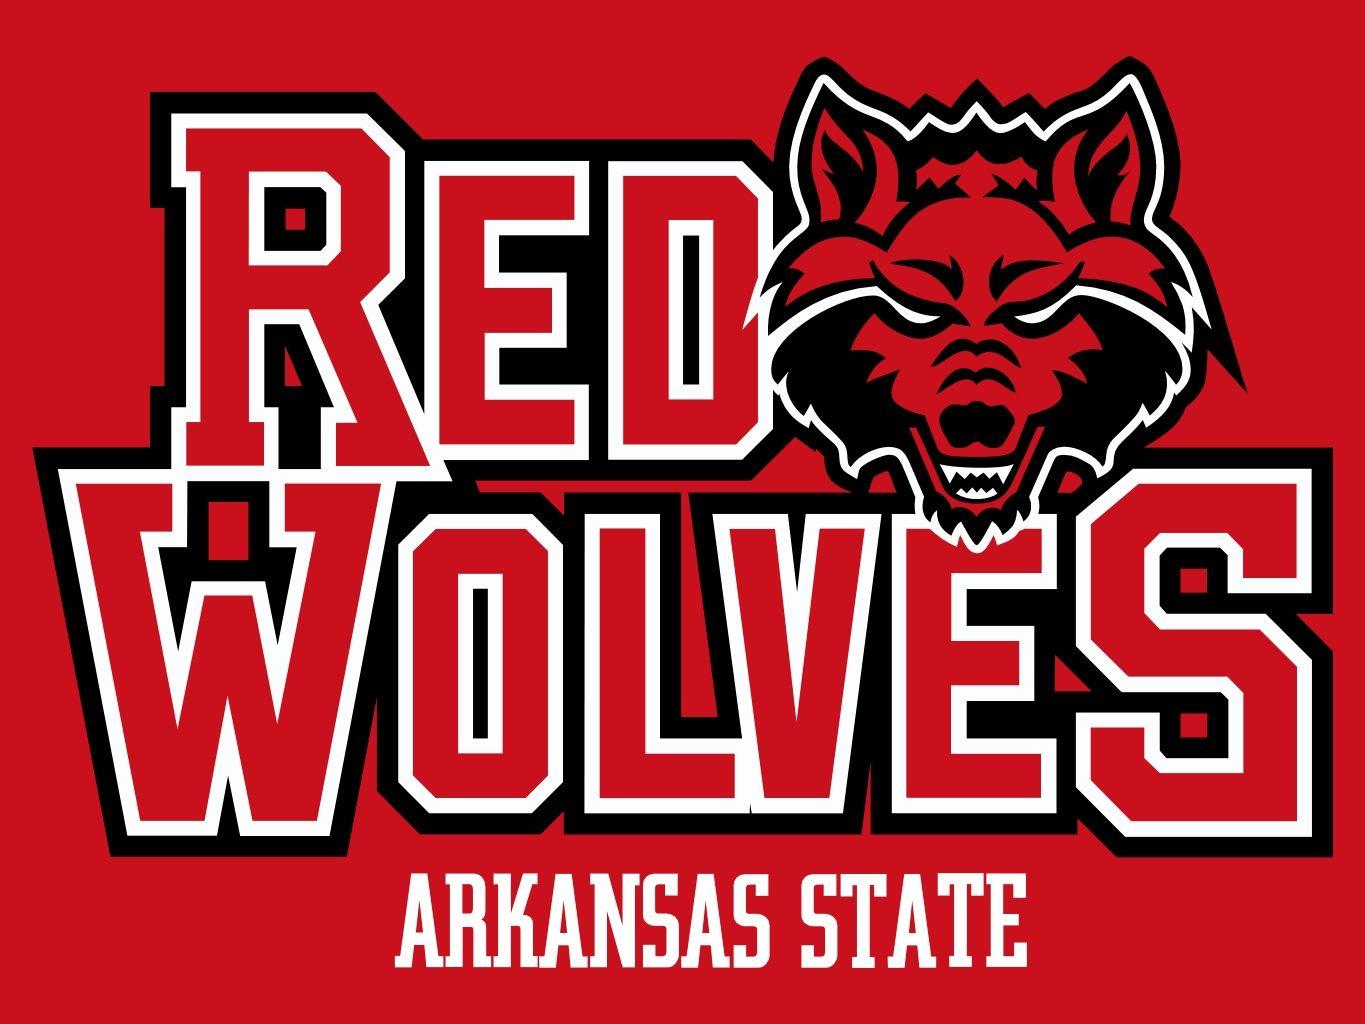 Arkansas State Red Wolves Logo - Image - Arkansas State Red Wolves.jpg | NCAA Football Wiki | FANDOM ...